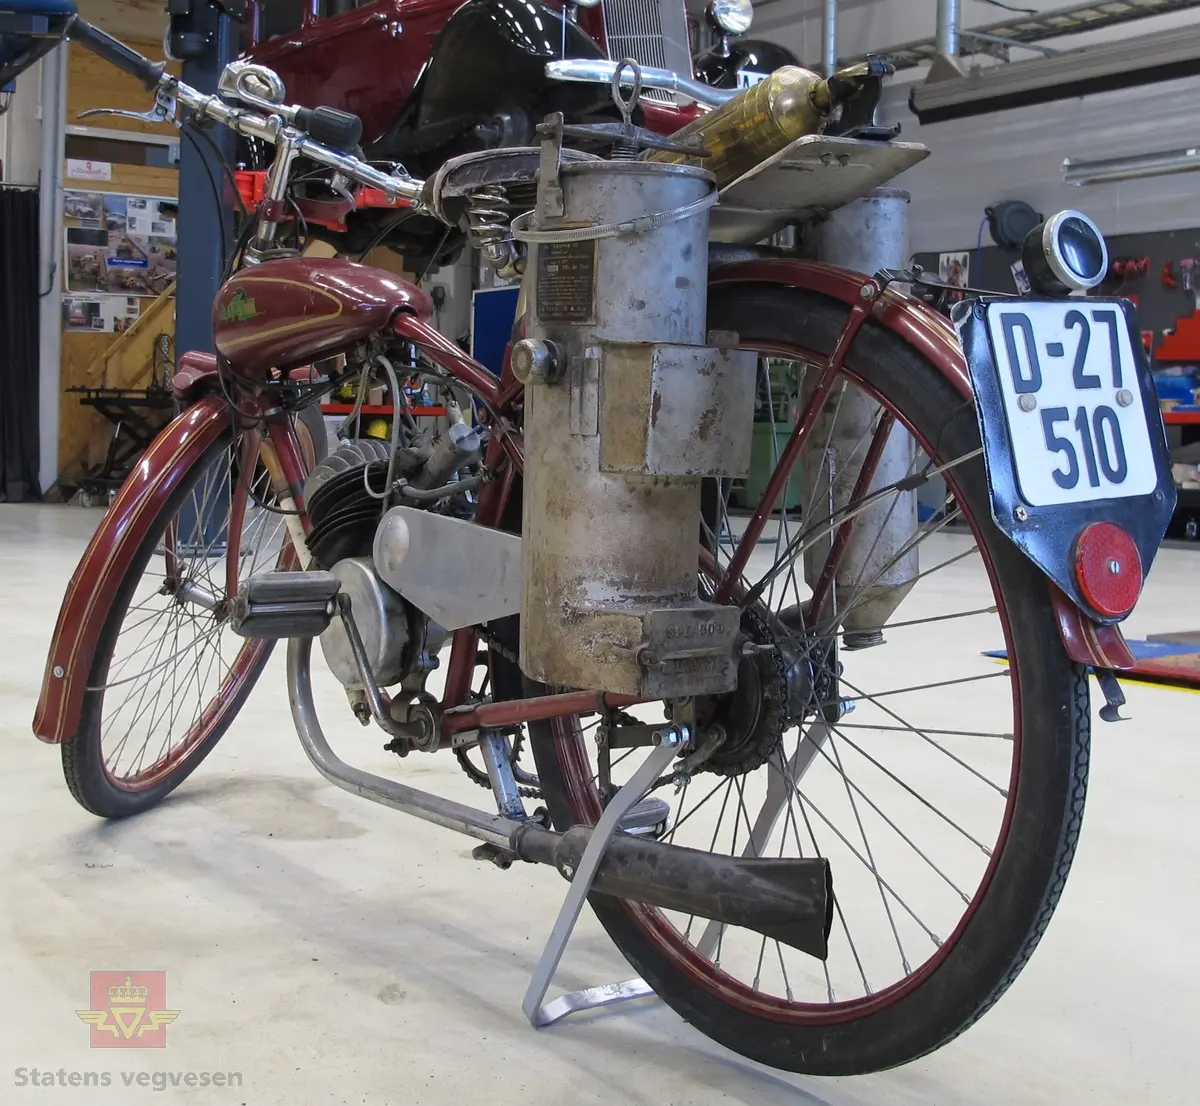 Rød (vinrød), motorsykkel med pedaler, forbrenningsmotor og vedgassgenerator. 
Motorsykkelen er en BLIXT lettvekts motorsykkel fra 1936 med en 98 cc, en-sylindret totaktsmotor av fabrikat Fichtel & Sachs som yter 2,5 hk og går på bensin.
Generatoren er av fabrikat Åsbrink, type Sperco lI, og laget primært for bruk med trekull. Virkningsgraden er ca 0,4 med "godt køl", det vil si en 2,5 hk motor kan under gunstige omstendigheter teoretisk utvikle ca 1 hk. Kullet skal knuses til biter av størrelse 5-15 millimeter, og oppfyringen er svært omstendelig. I teorien skal man kunne kjøre ca 10 km på "en fyring".
Motorsykkelen har 2 gir og veier 73 kilo.
Den er 72 cm bred, 210 cm lang, og ...høy...
På hele sykkelen er det 1 sitteplass.
Det er montert pumpe til dekkene på ramma og et brannslukkingsapparat bak på sykkelen.